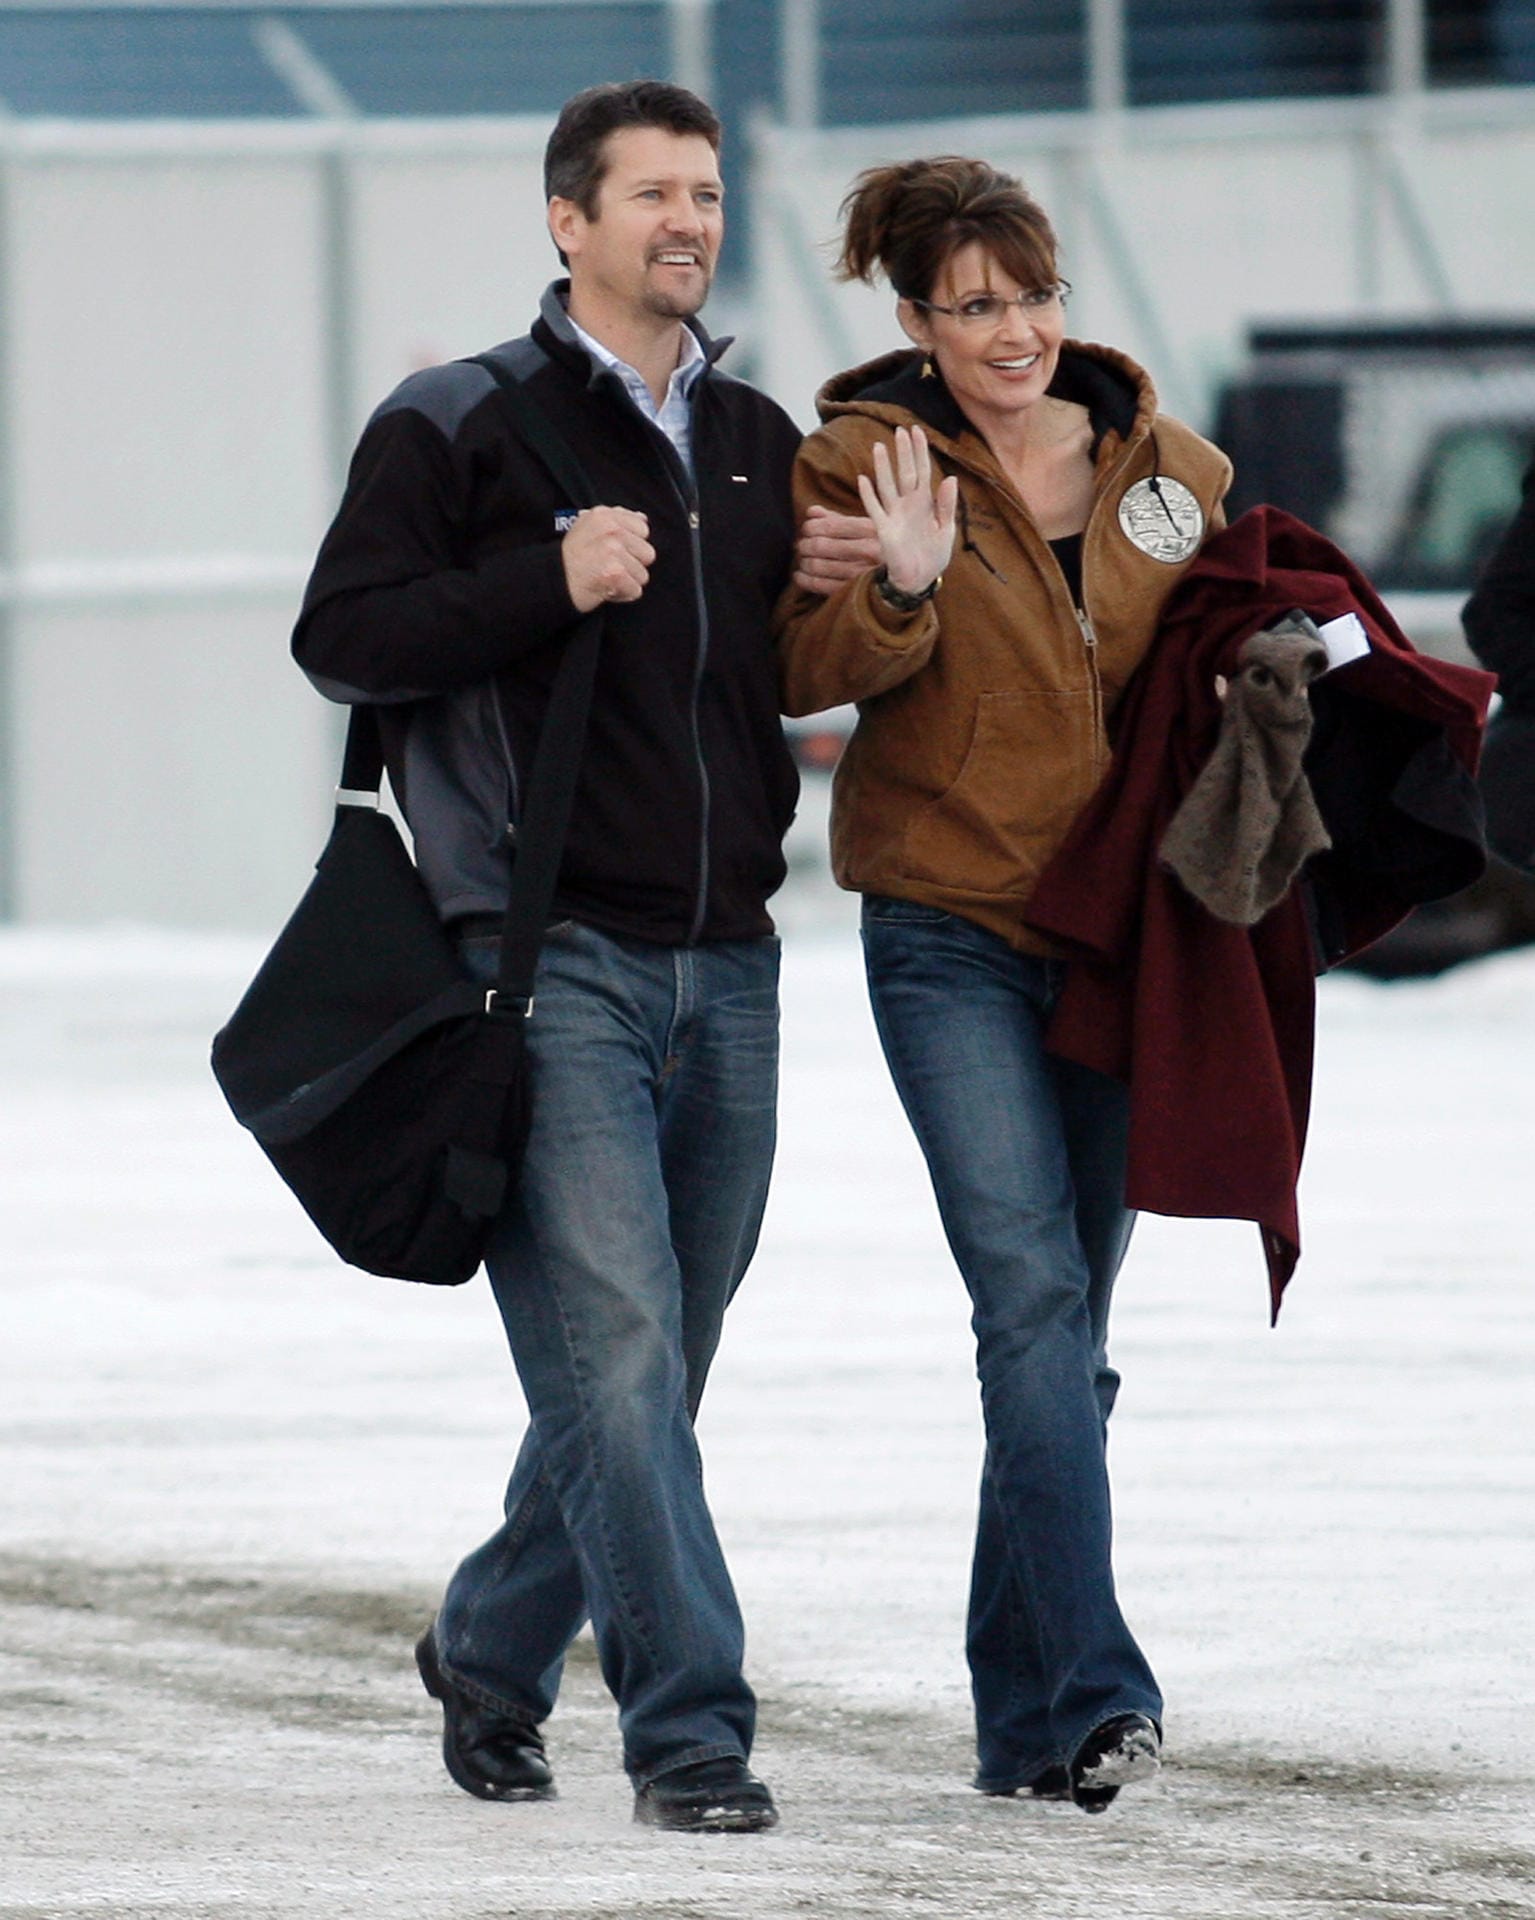 Reise im Jahr 2008: Sarah Palin war auch Kandidatin für die US-Vizepräsidentschaft.